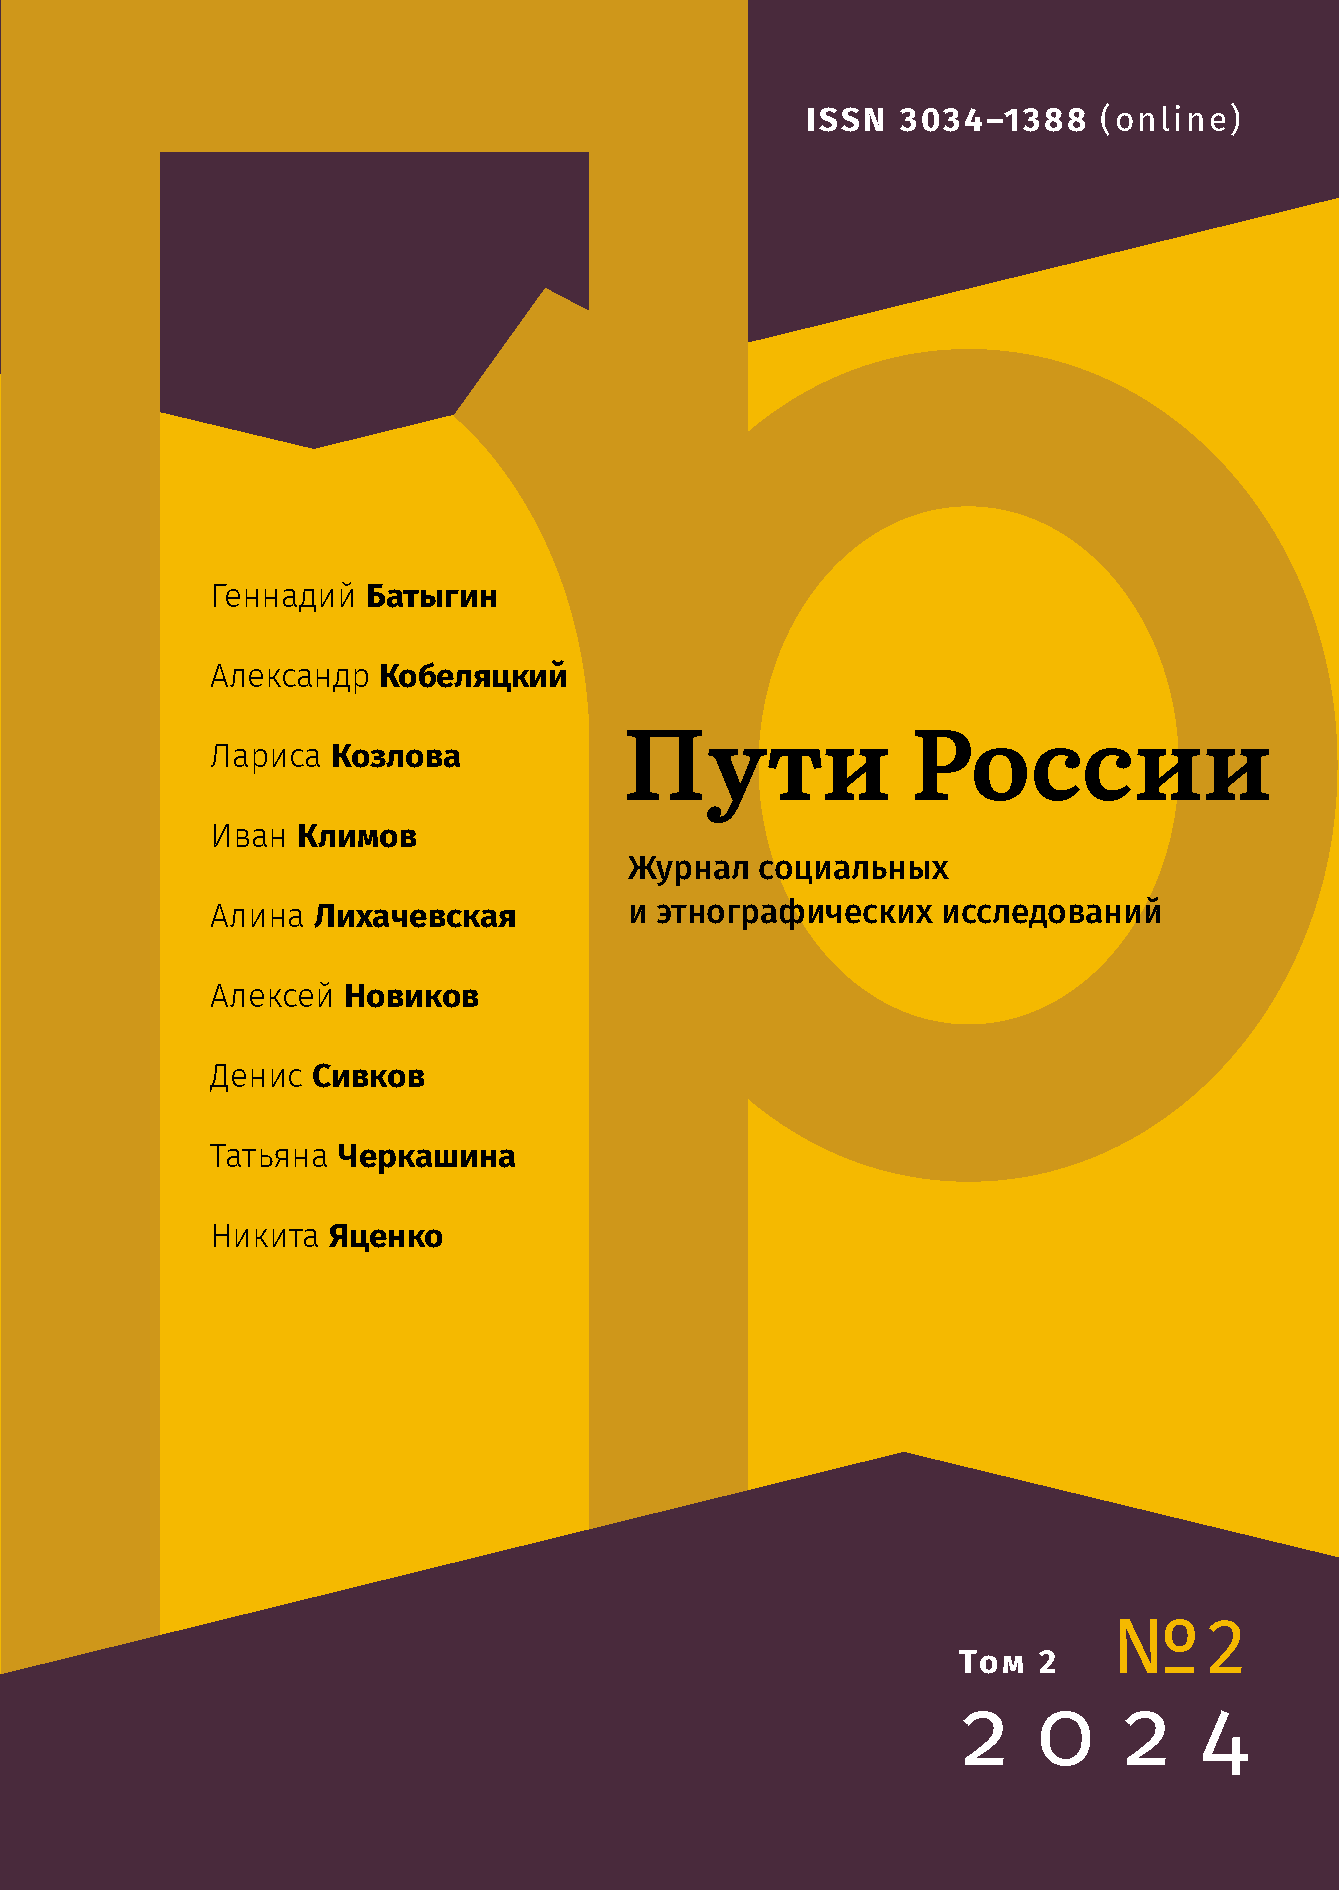 					Показать Том 2 № 2 (2024): Пути России. Журнал cоциальных и этнографических исследований
				